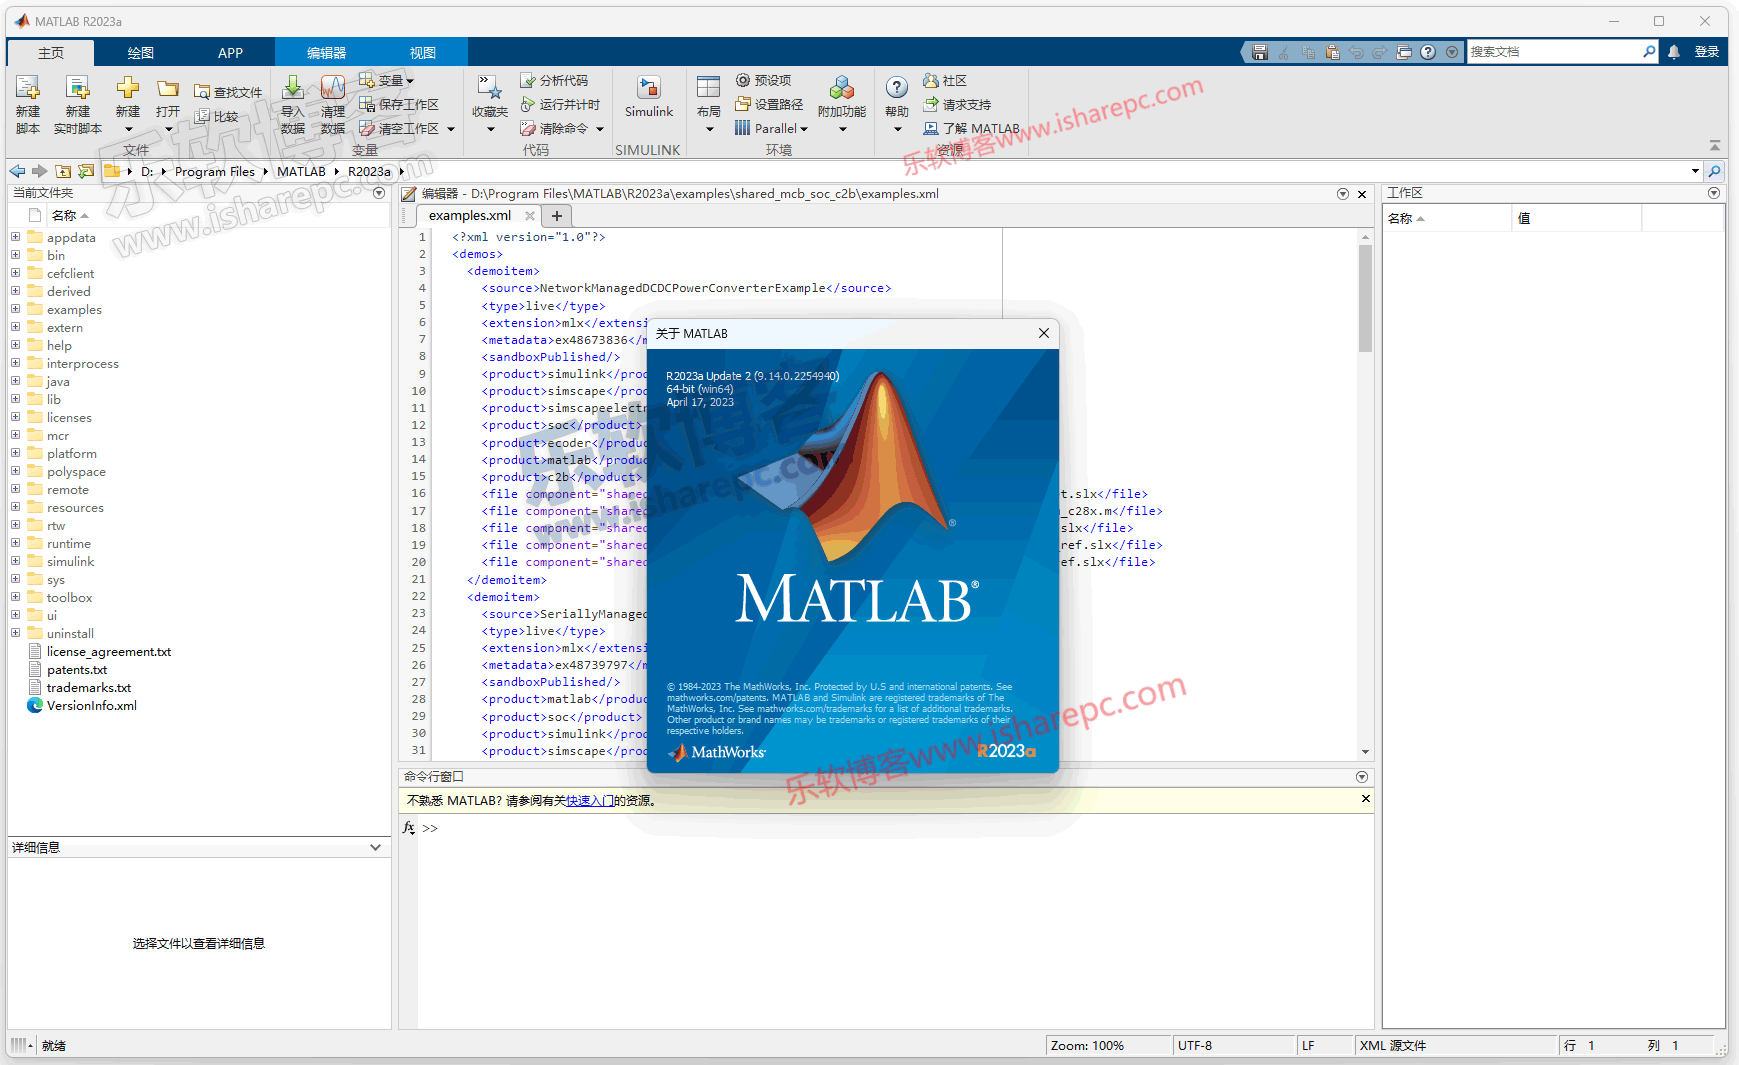 MathWorks MATLAB R2023a v9.14.0.2286388 instal the last version for ipod